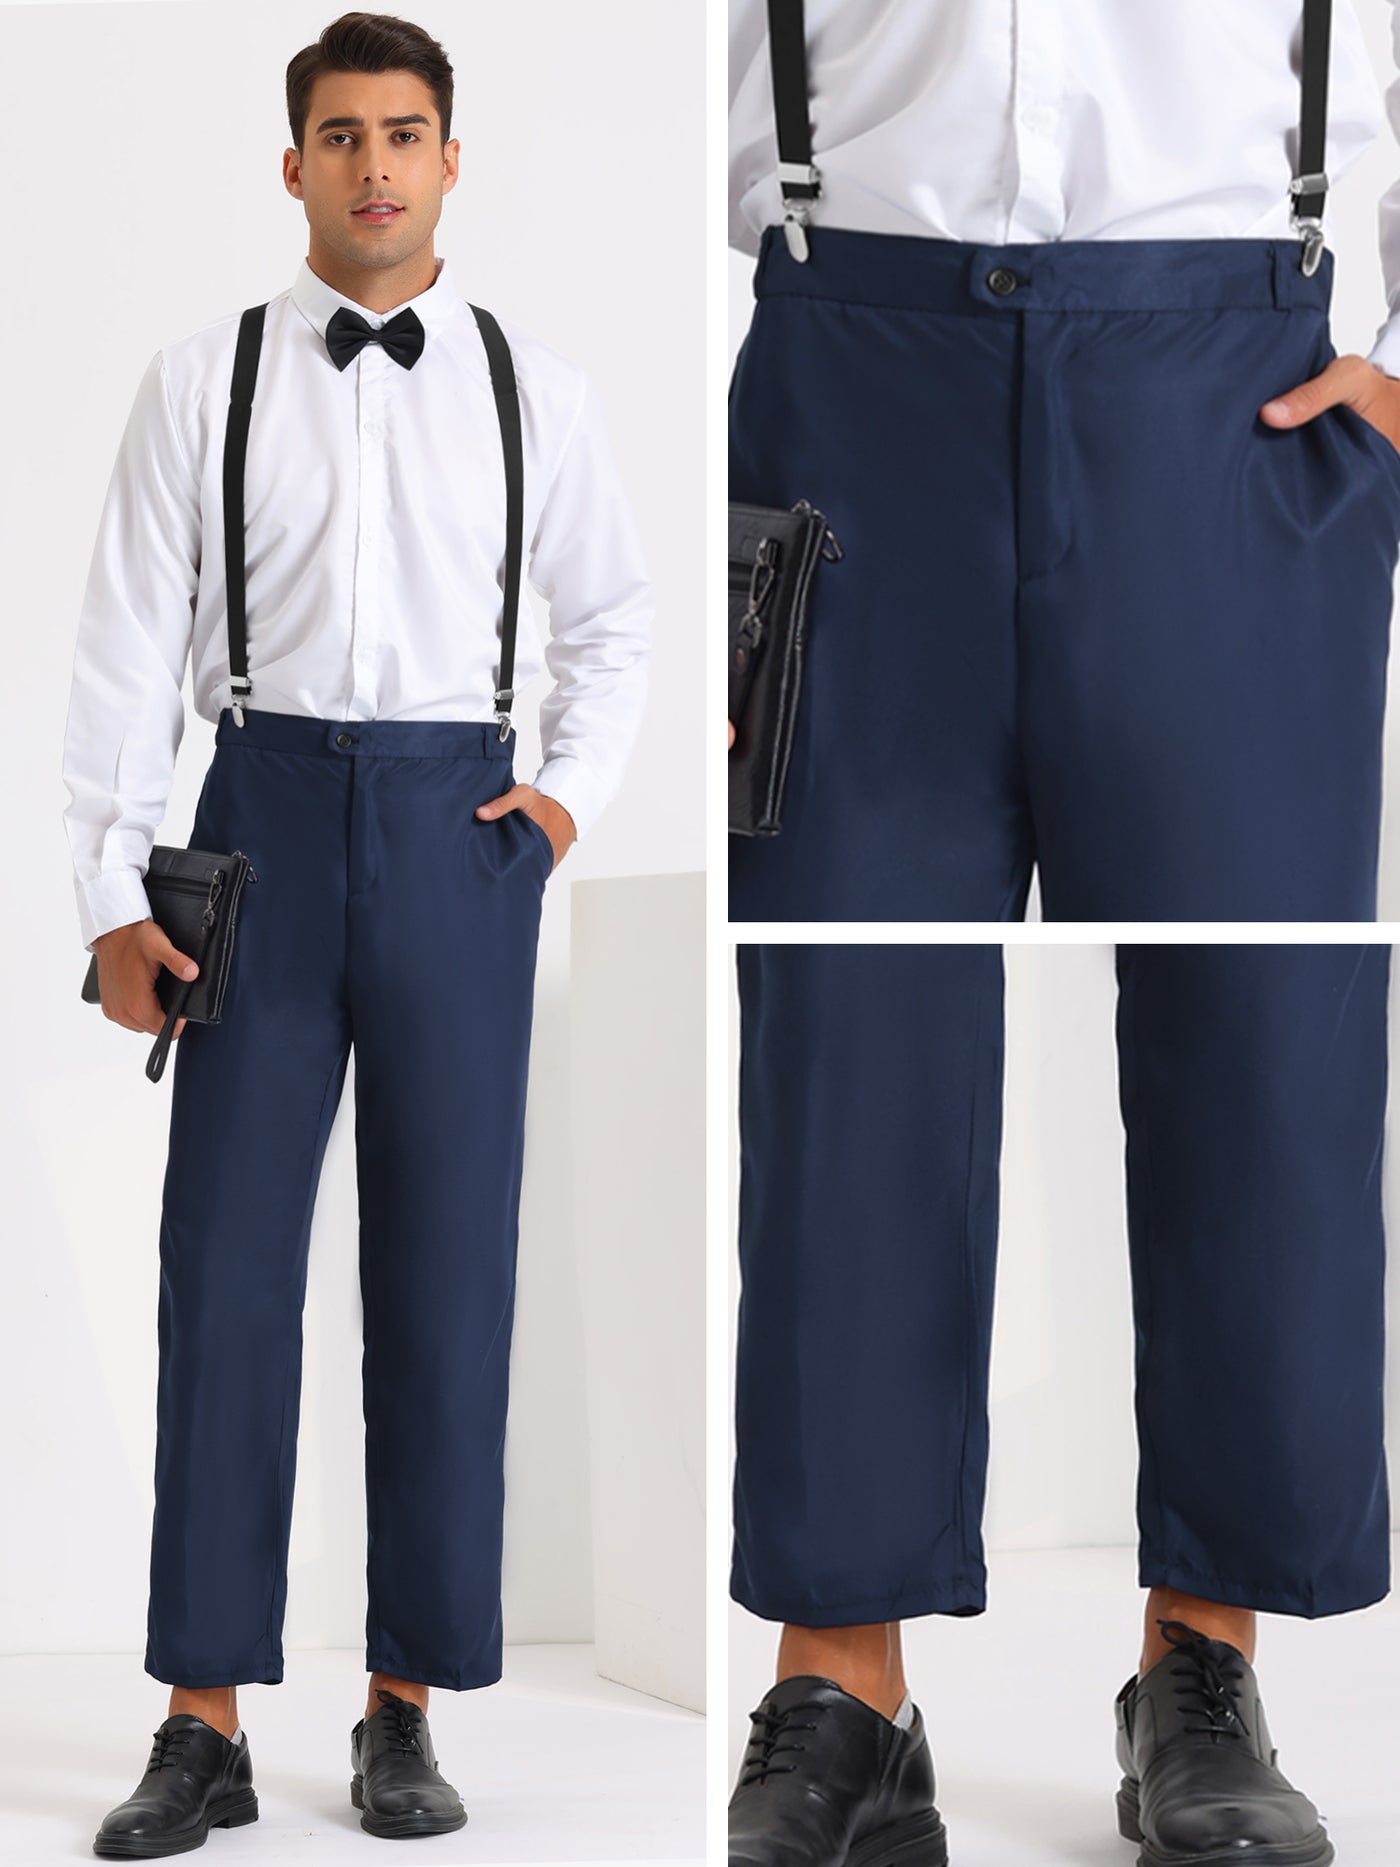 Bublédon 3 Pieces Suits for Men's Business Wedding Dress Shirt Pants with Suspender Sets